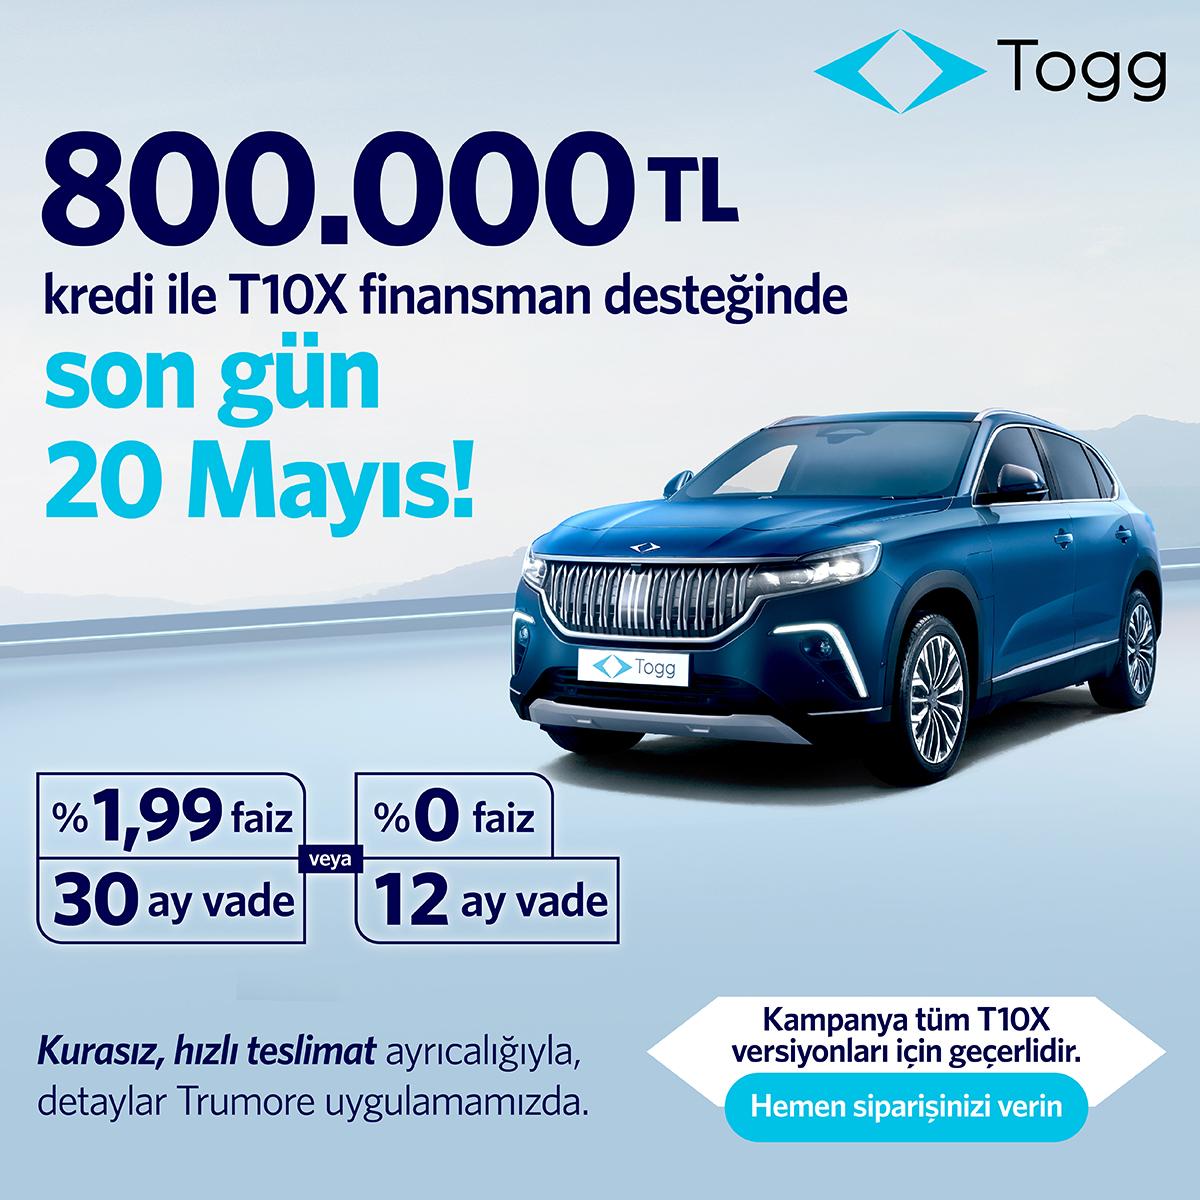 Togg, 800.000 TL’lik kredi finansman desteğinden faydalanmak için son günün 20 Mayıs Pazartesi günü olduğunu açıkladı.